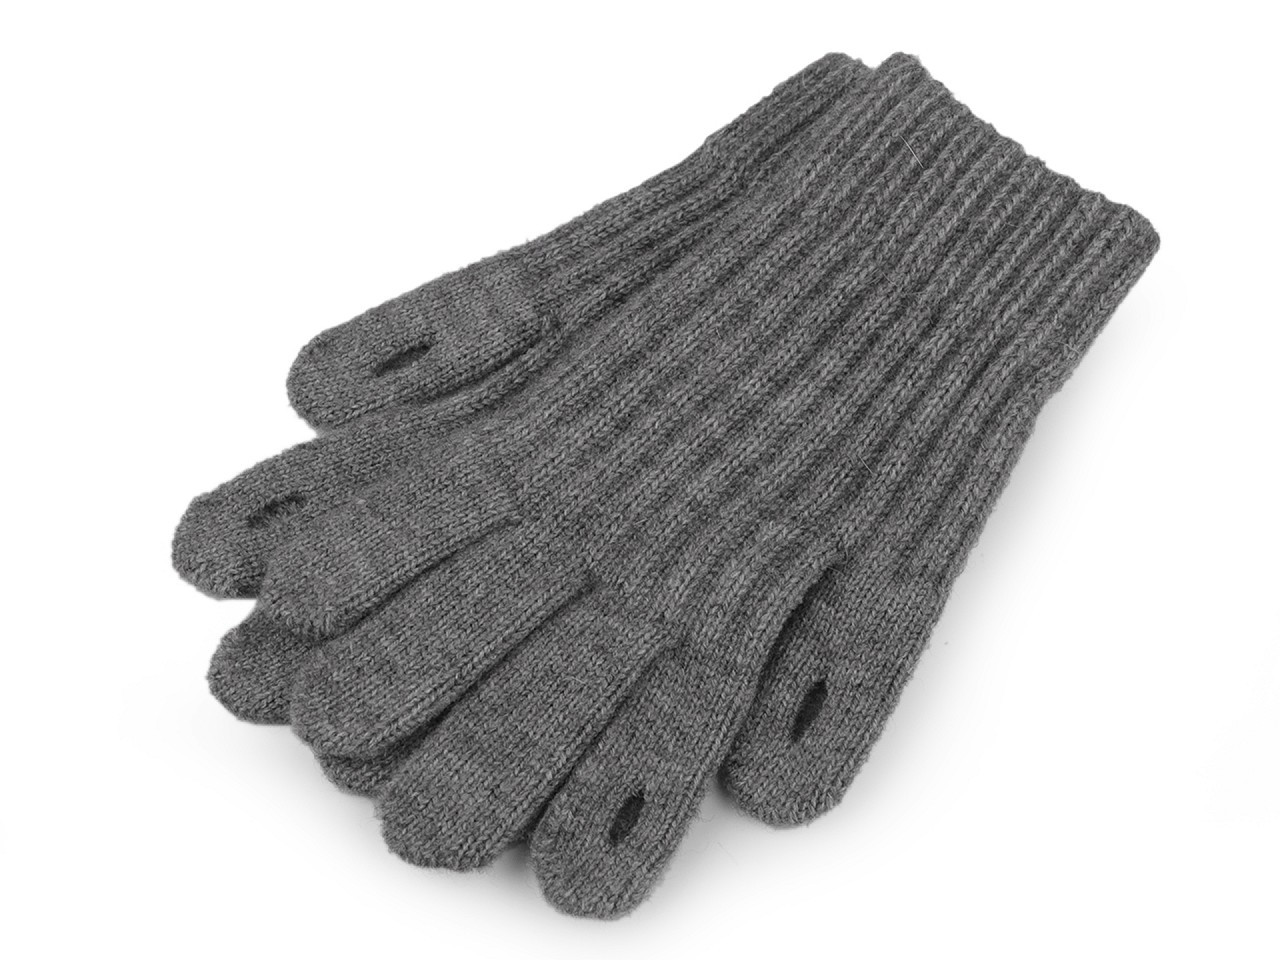 Pletené rukavice s otvory pro ovládání dotykových zařízení, barva 2 šedá